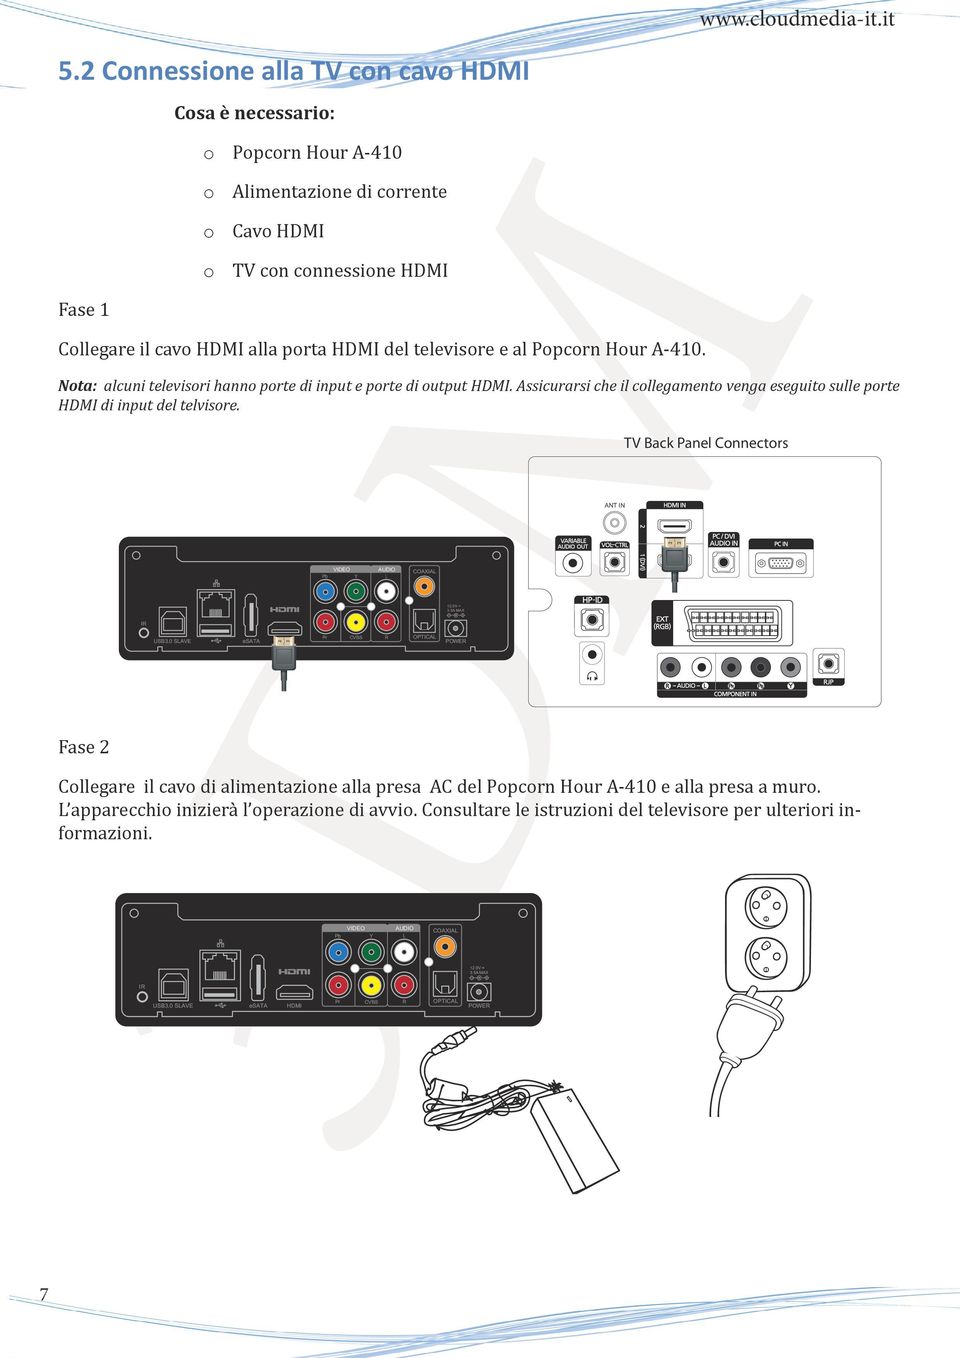 0 SLAVE esata HDMI Pb Pr VIDEO Y CVBS AUDIO L R COAXIAL OPTICAL 12.0V 3.